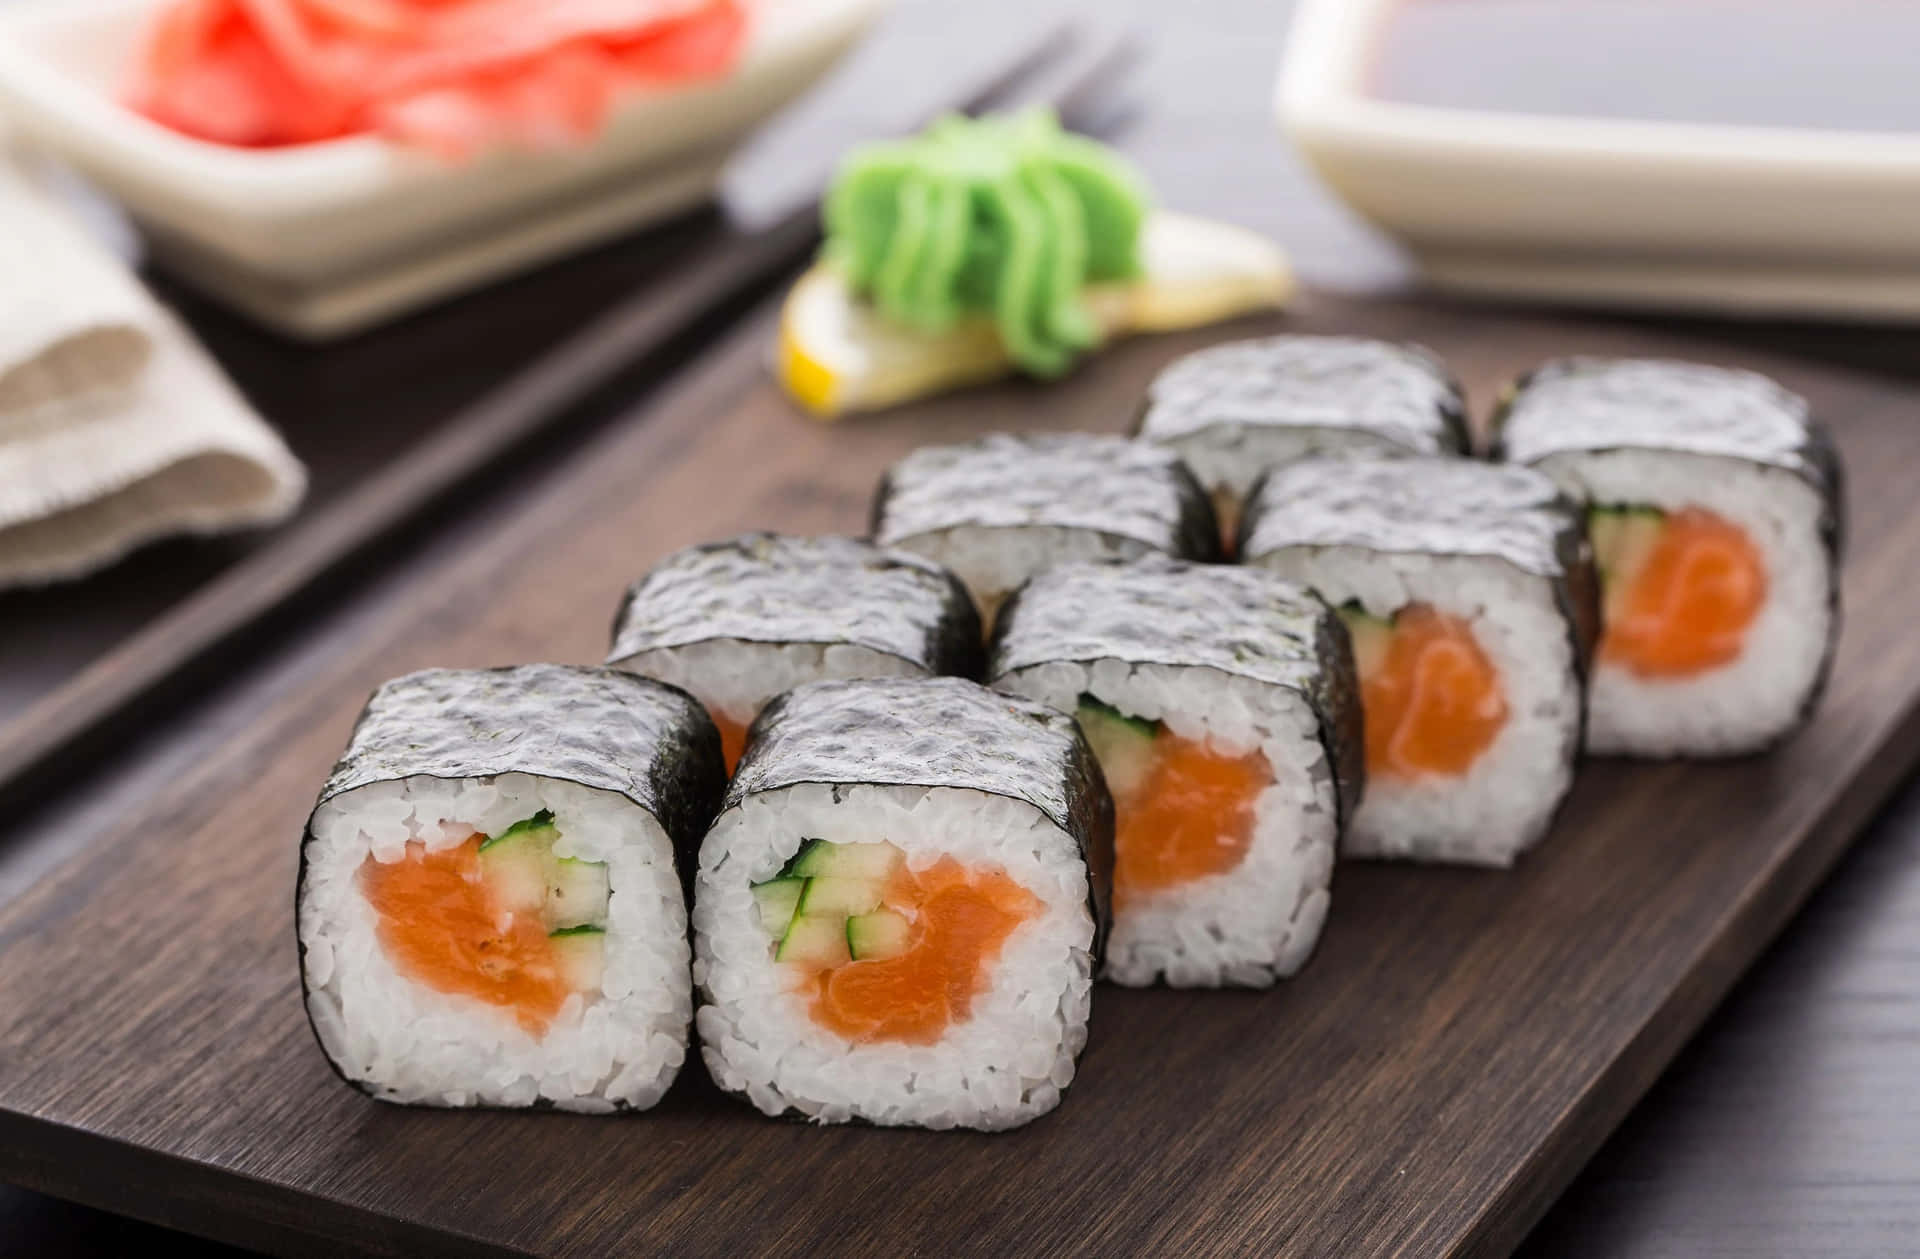 Enjoying delicious sushi today!